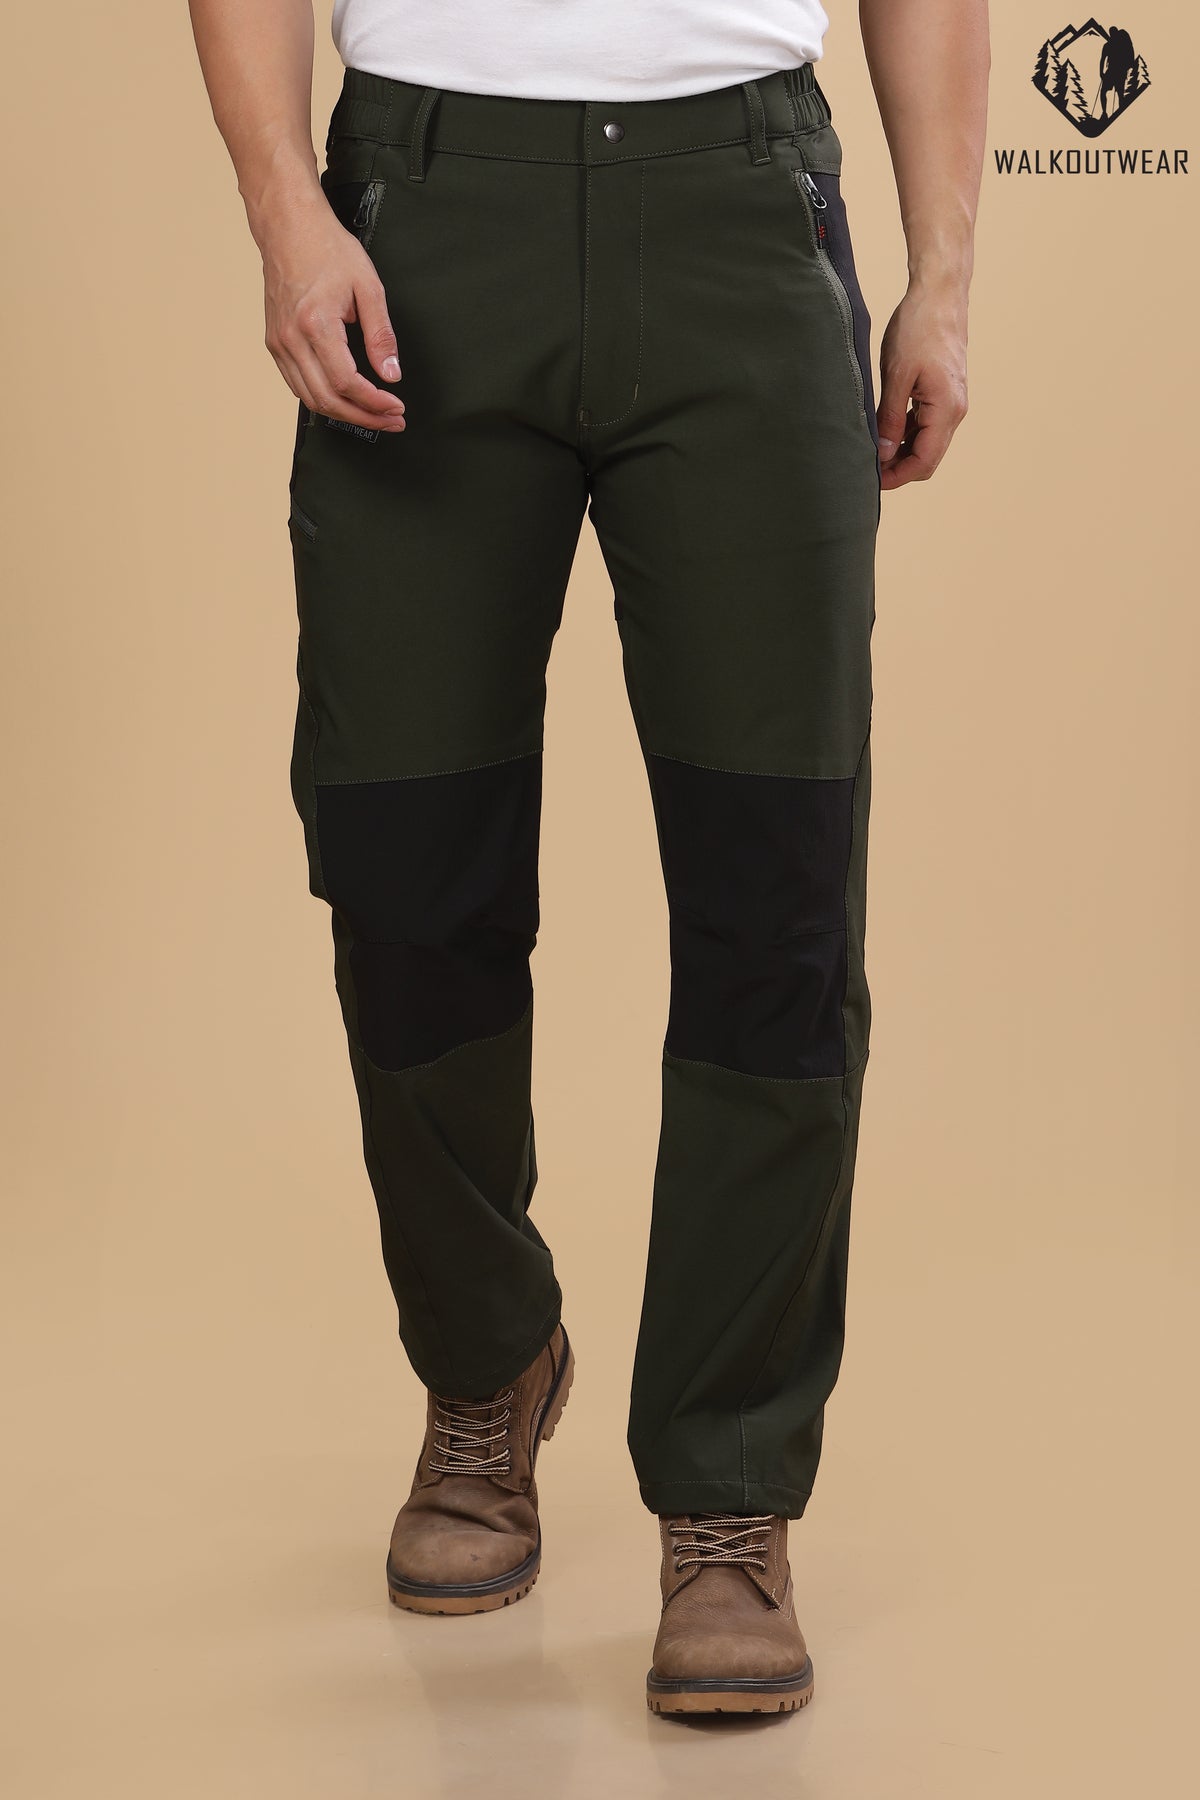 Buy Fern Green Trousers  Pants for Men by Bhaane Online  Ajiocom